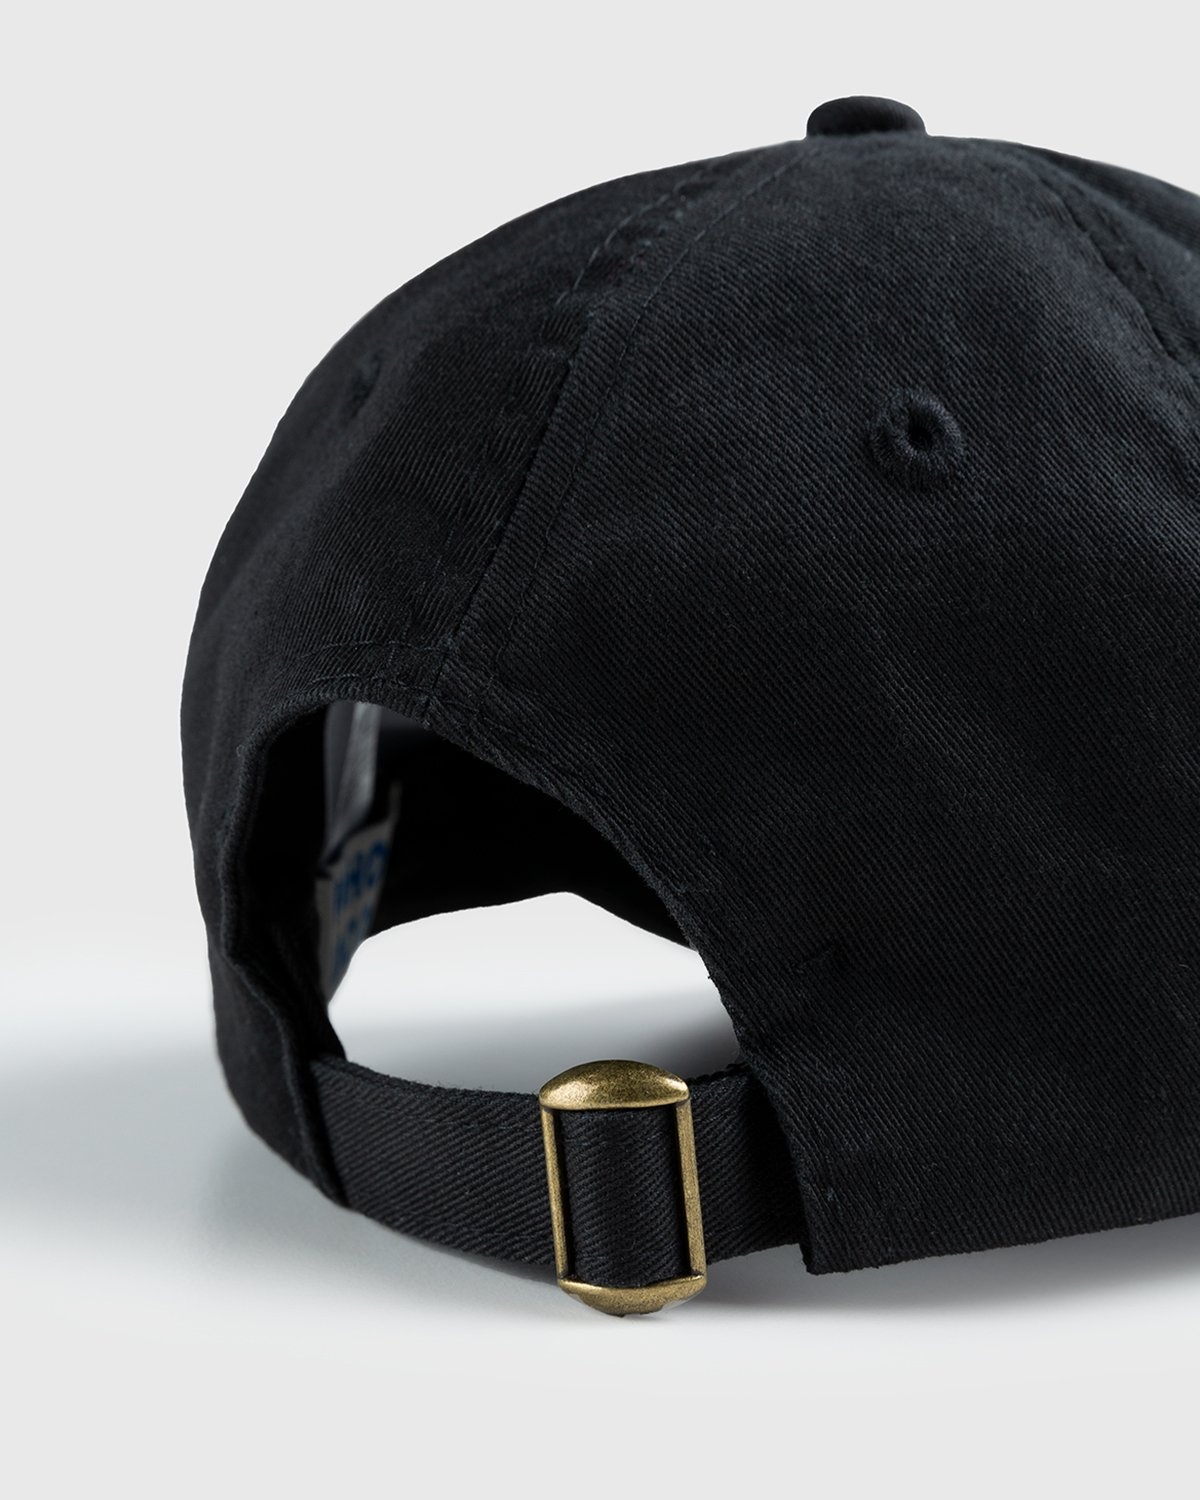 HO HO COCO – Executive Assistant Cap Black - Hats - Black - Image 6